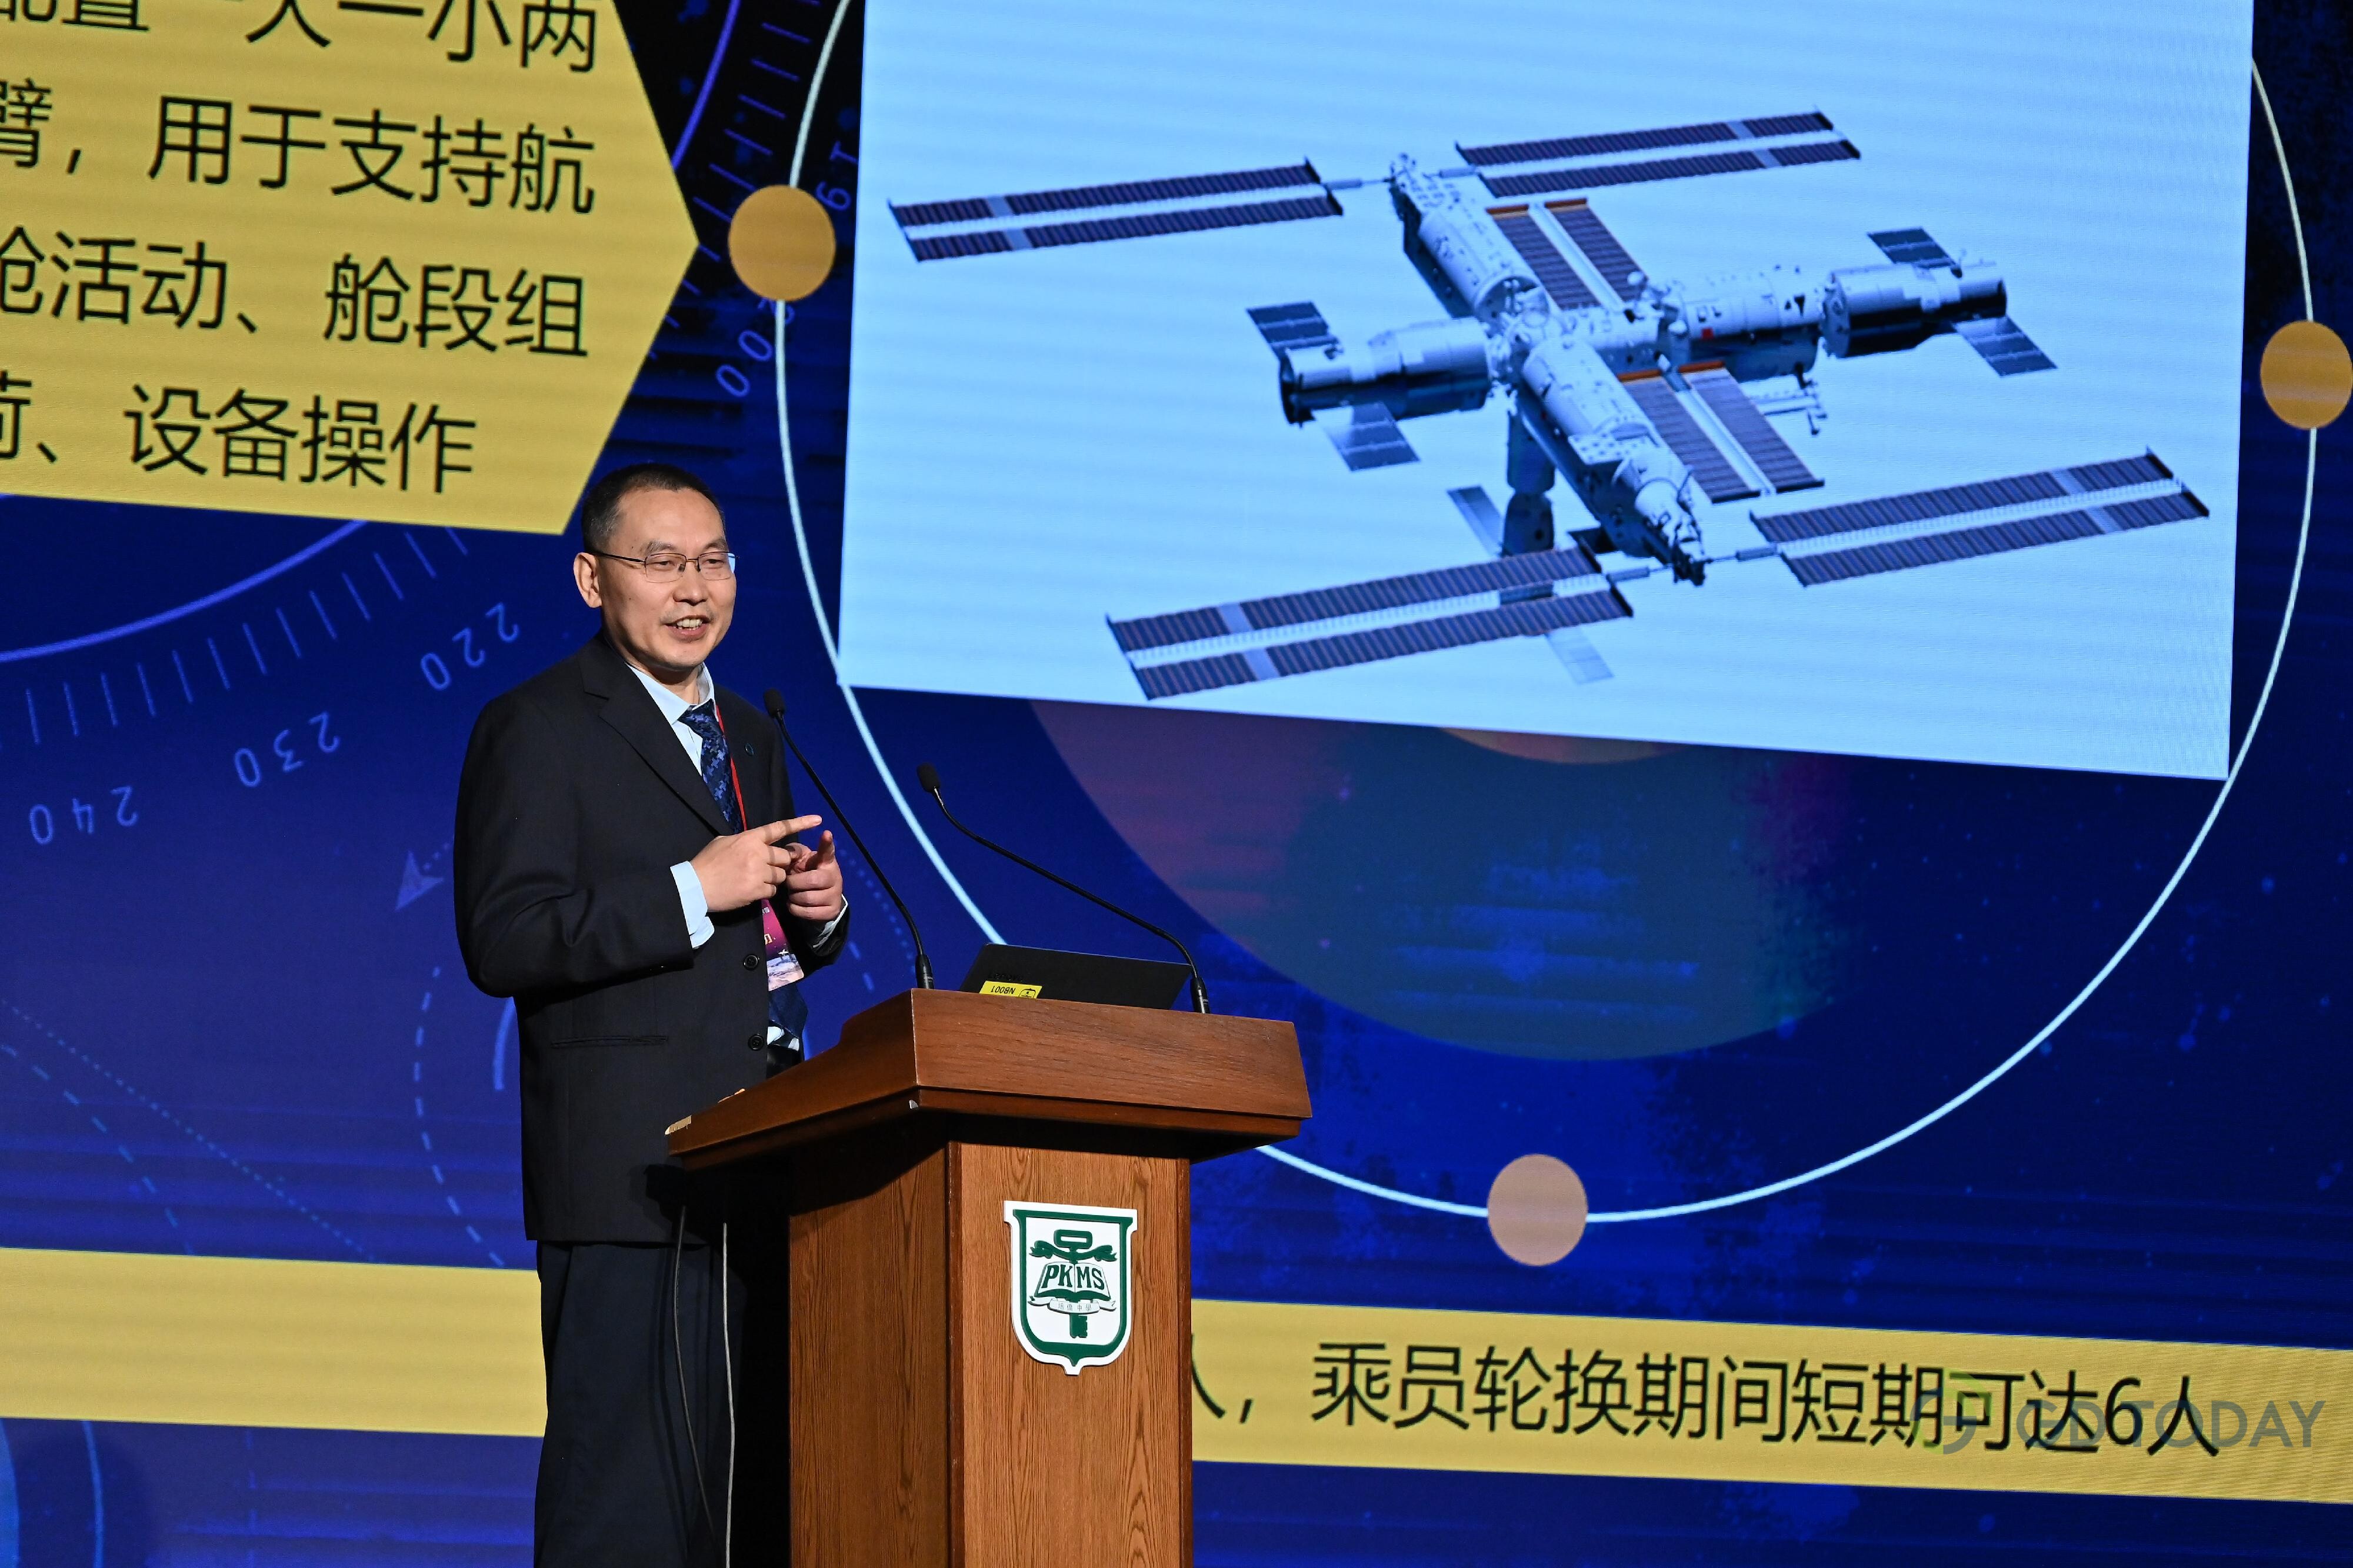 中国载人航天工程副总设计师董能力出席在培侨中学举行的“中国载人航天工程代表团与中、小学生真情对话”活动。